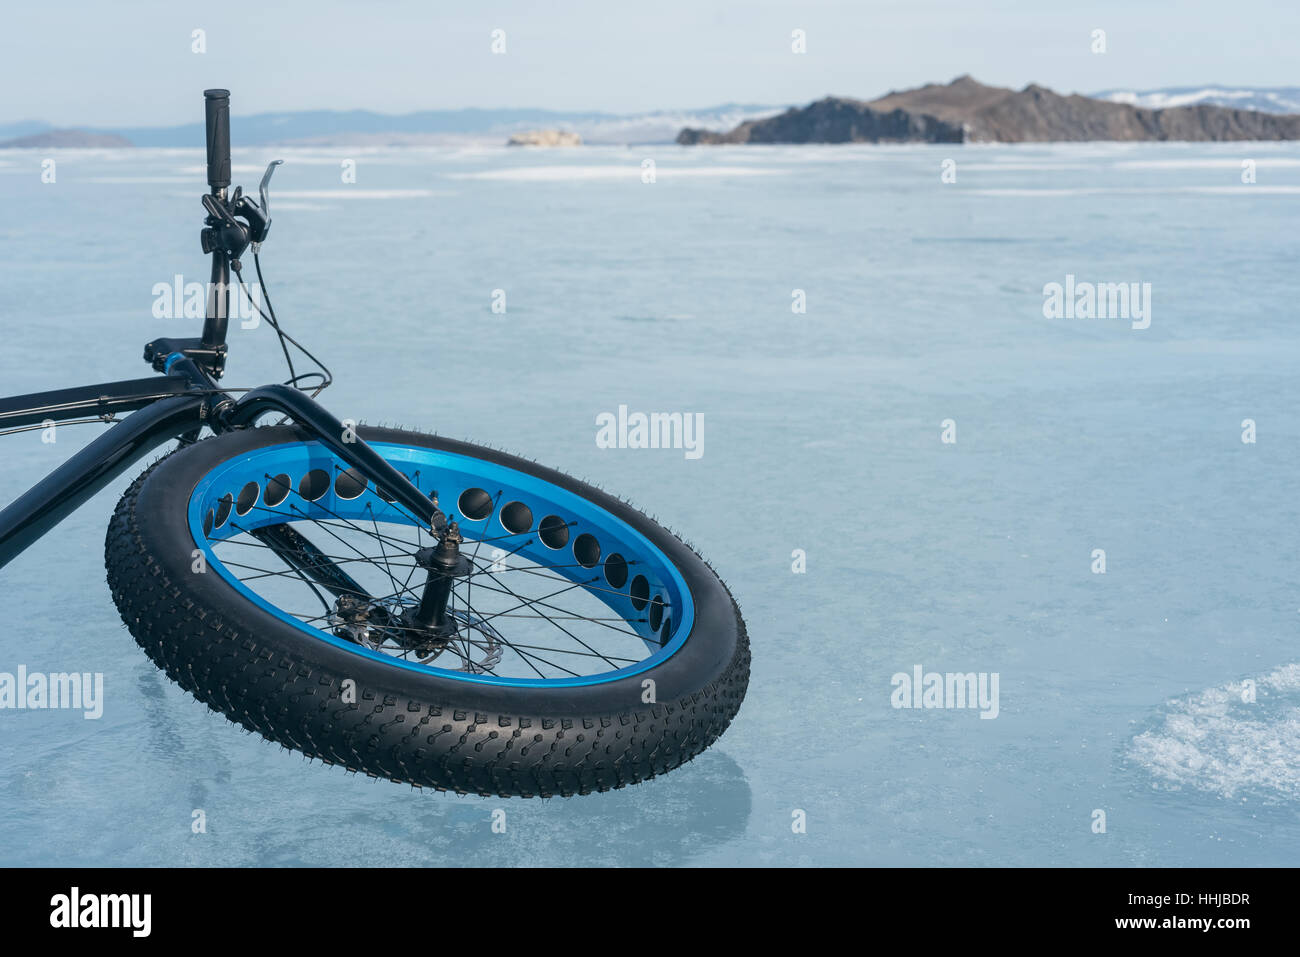 Fatbike auch fat-Bike oder Fett-Reifen Fahrrad genannt. Radfahren auf großen  Rädern. Auf dem Eis liegen. Blick auf die Berge Stockfotografie - Alamy